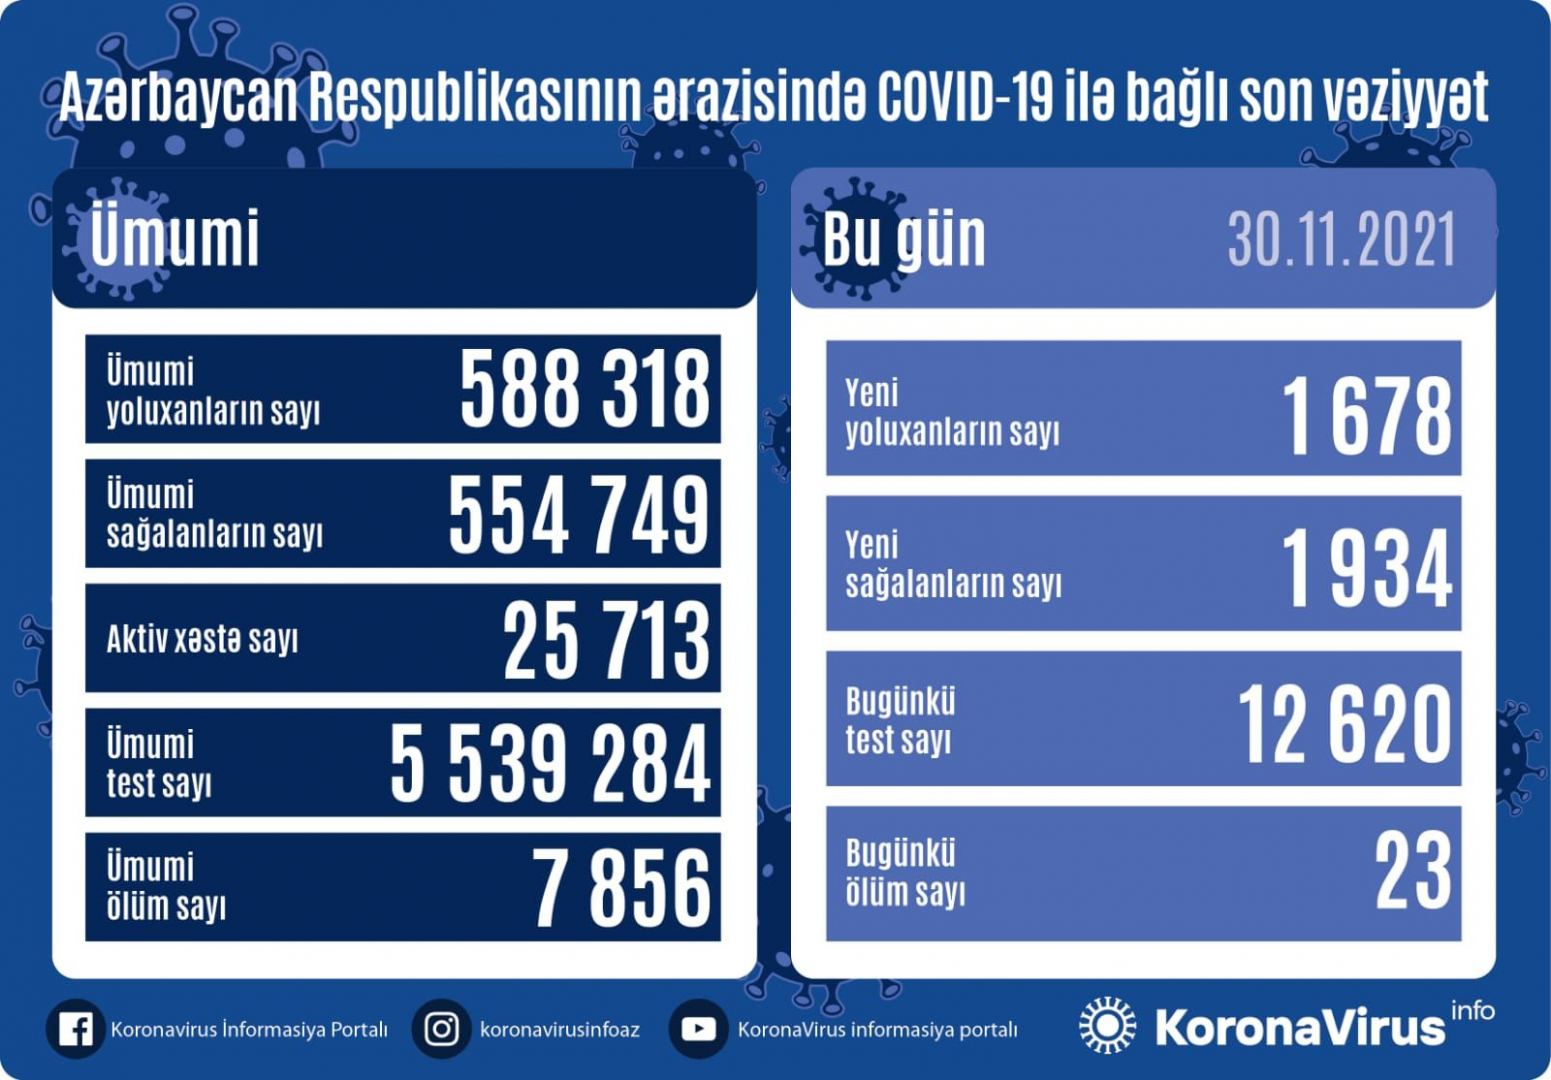 Azərbaycanda 1 678 nəfər COVID-19-a yoluxub, 23 nəfər ölüb